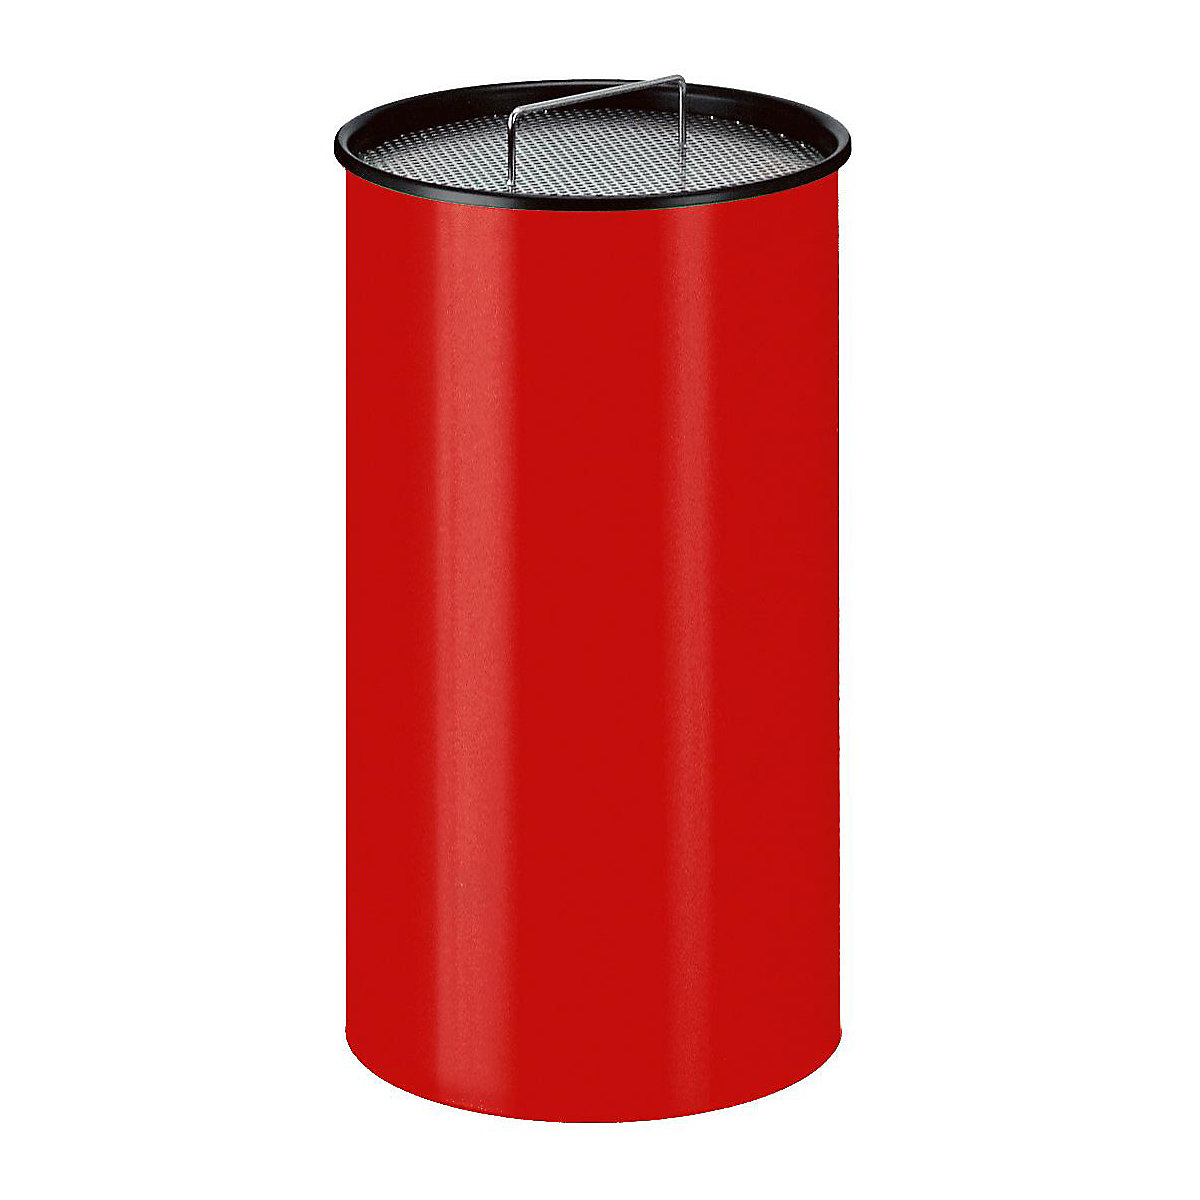 Stojeća pepeljara s pijeskom, okrugla izvedba, sa sitom, u crvenoj boji-2